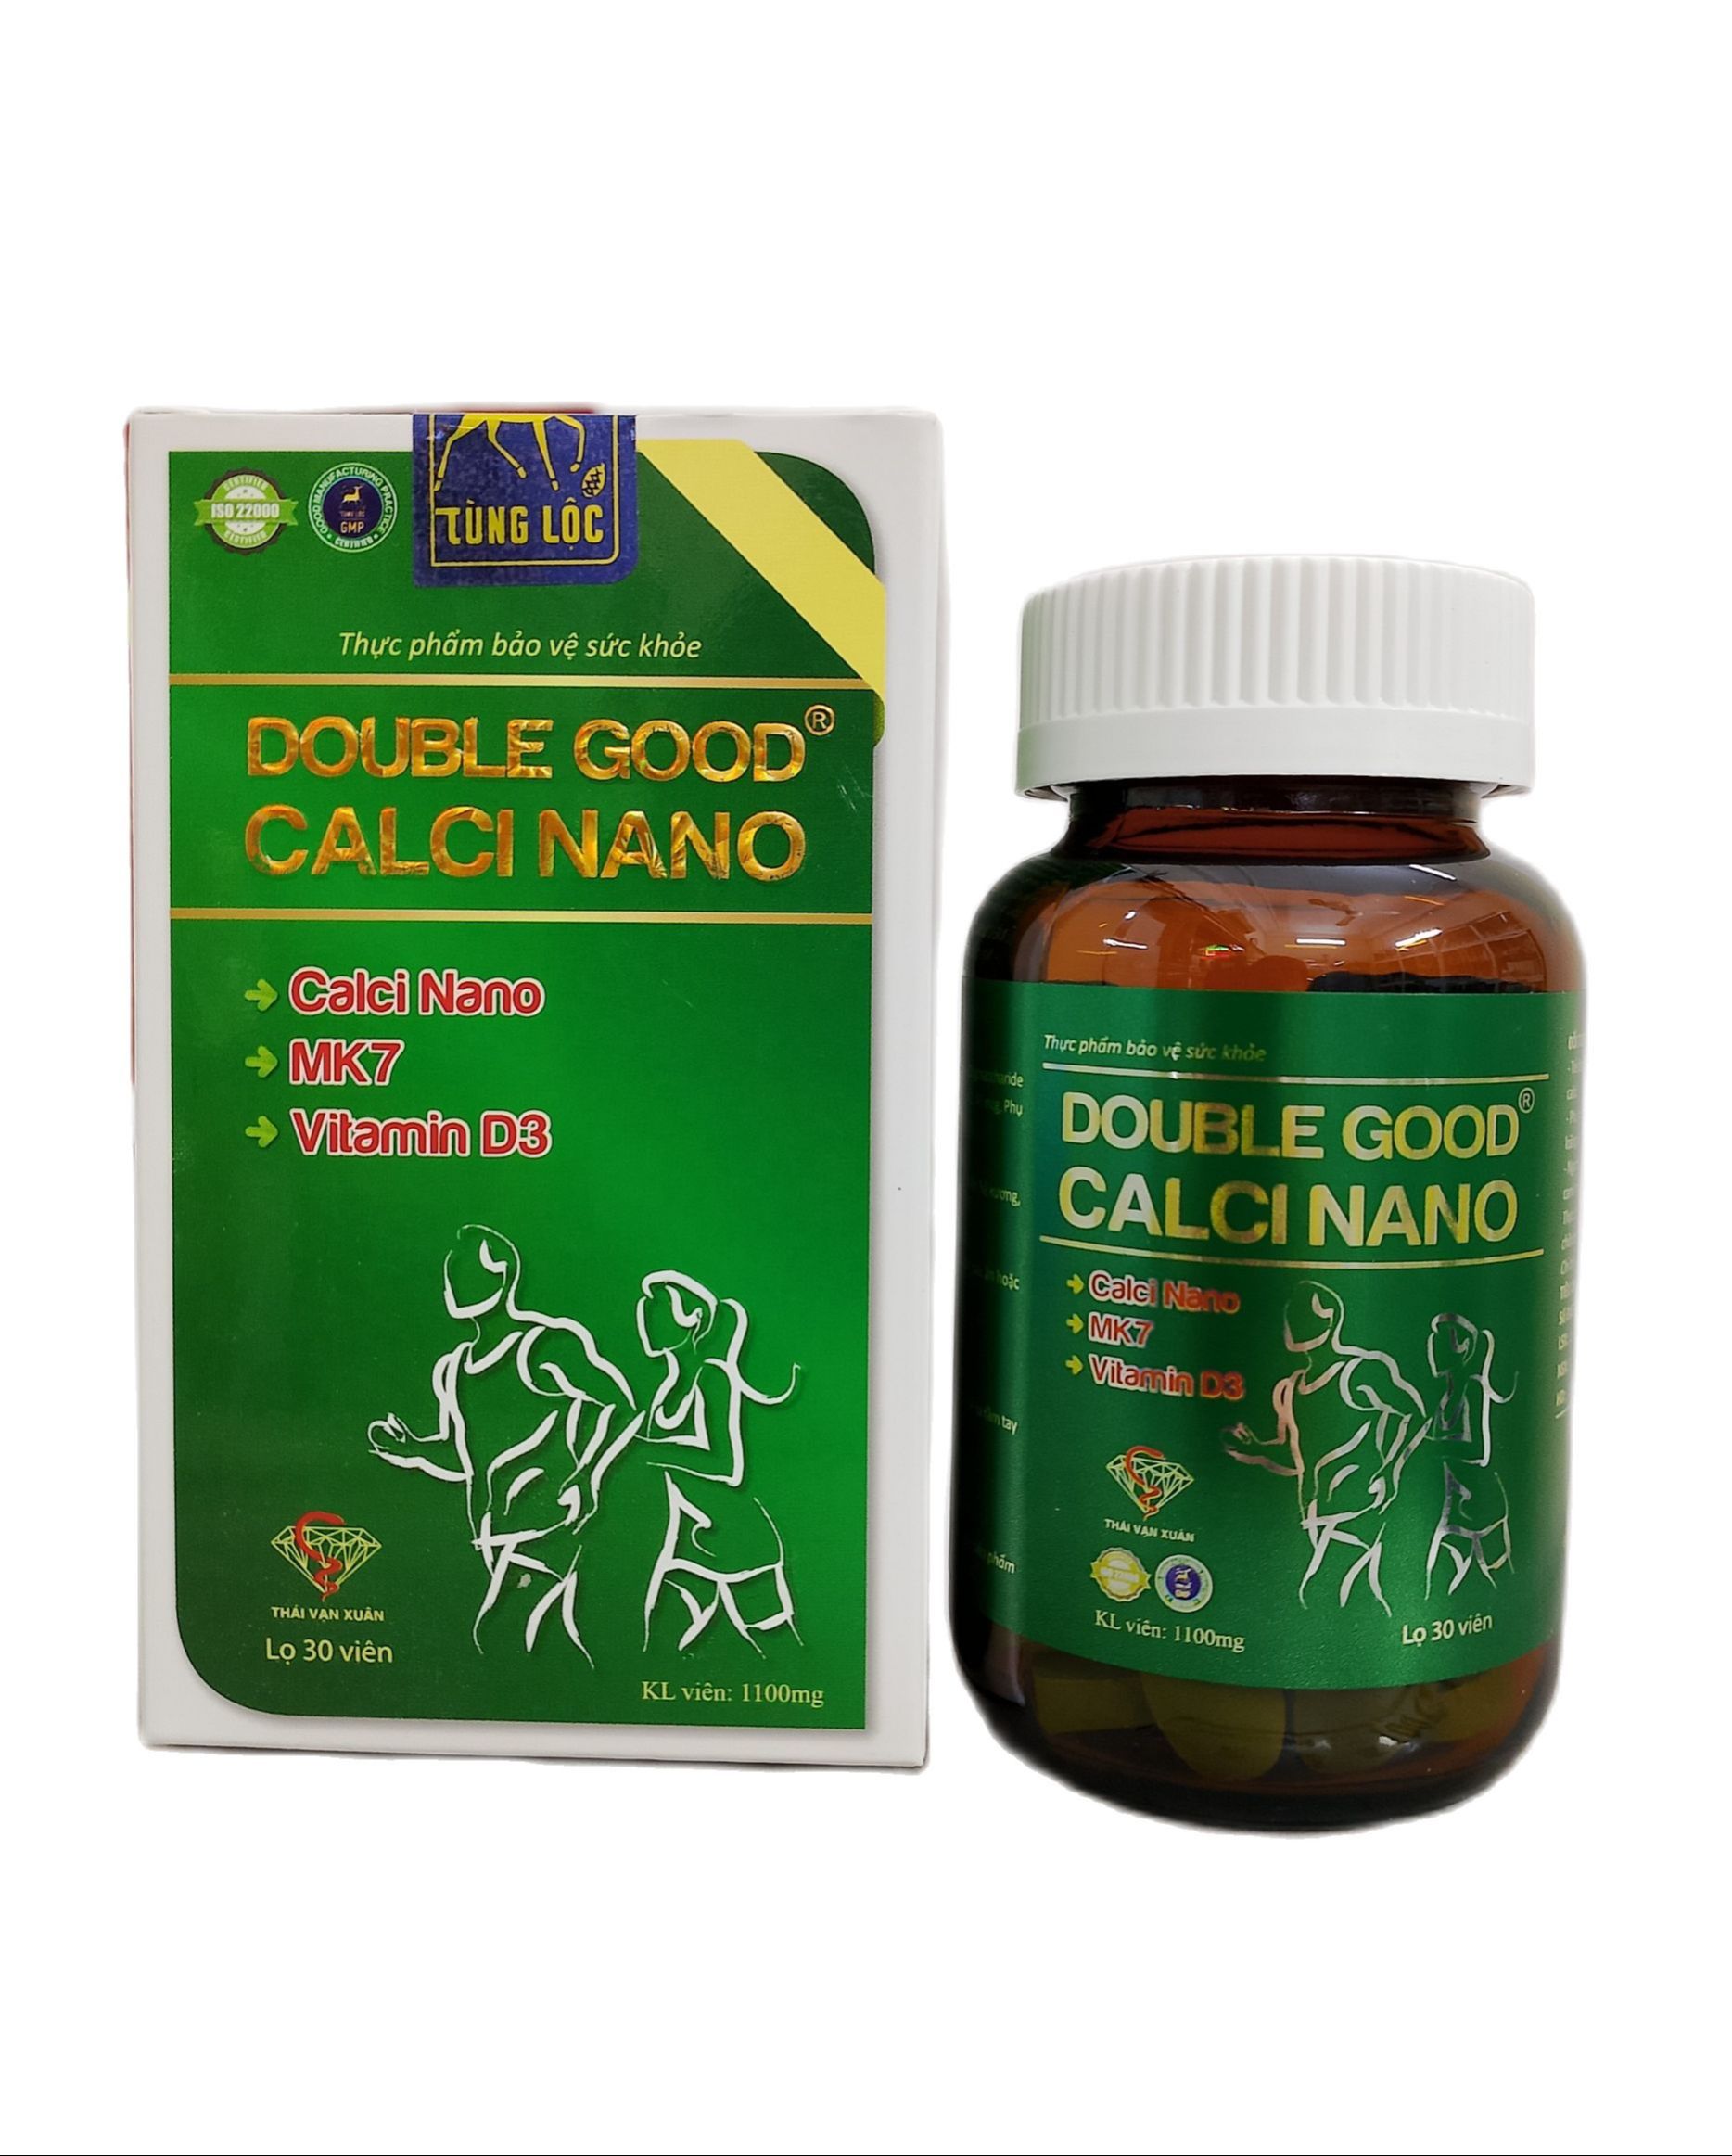 Viên uống bổ sung canxi Double Good Calci Nano - hỗ trợ phát triển xương, răng, tăng chiều cao cho trẻ, giảm nguy cơ loãng xương - 30v